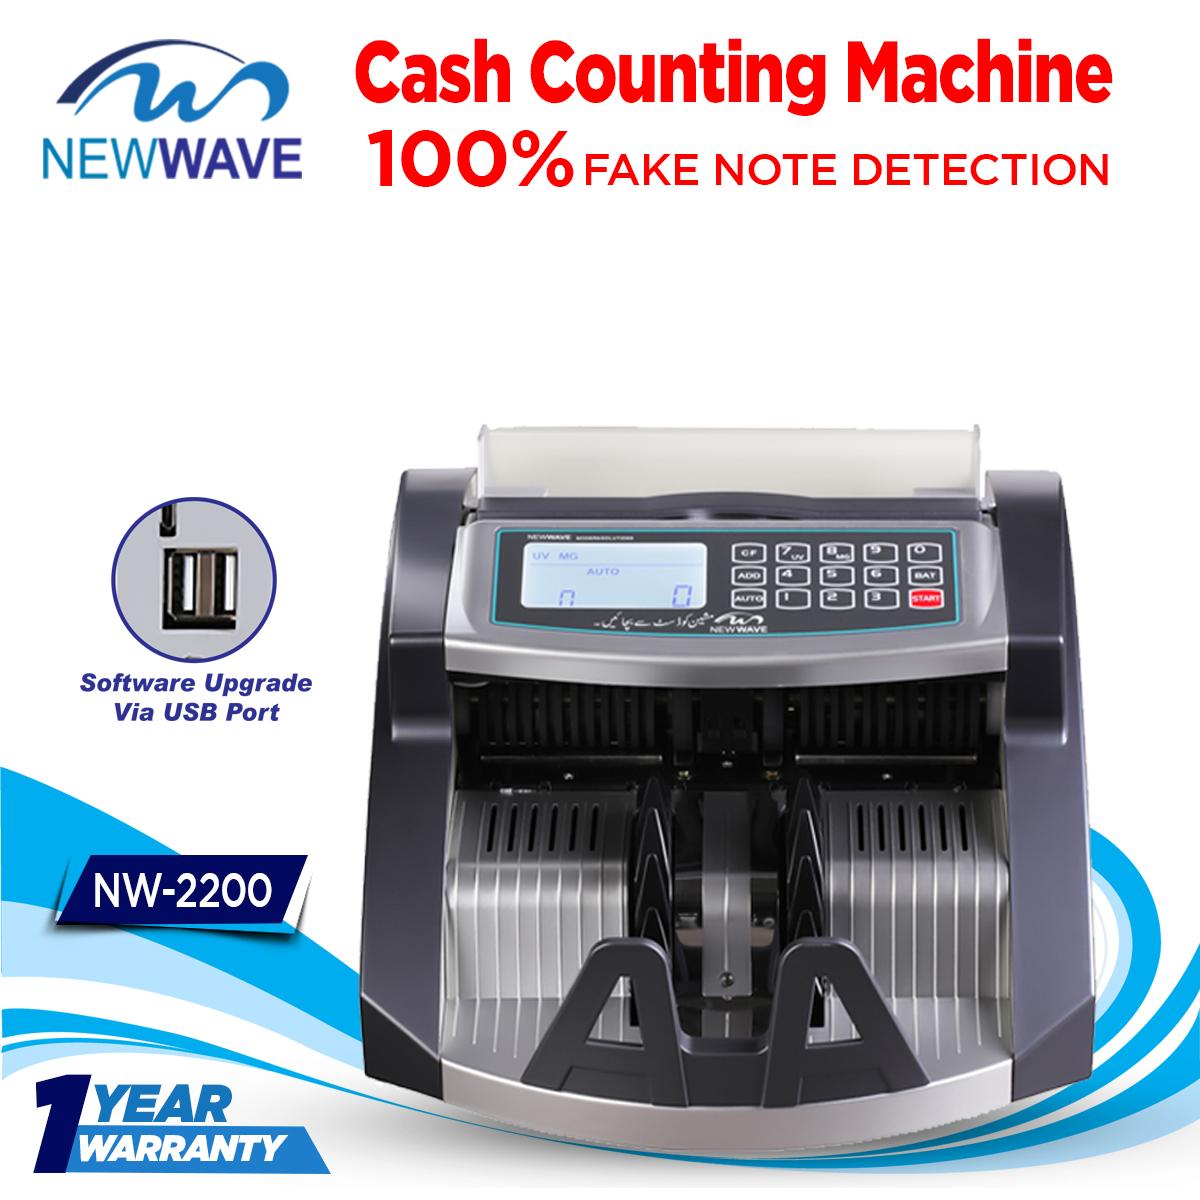 Cash Counting Machine - Note Counting Machine In Pakistan, Bill Counter Machine, Money Counter & Detector Machine, Note Counting Machine, Note Checking Machine,